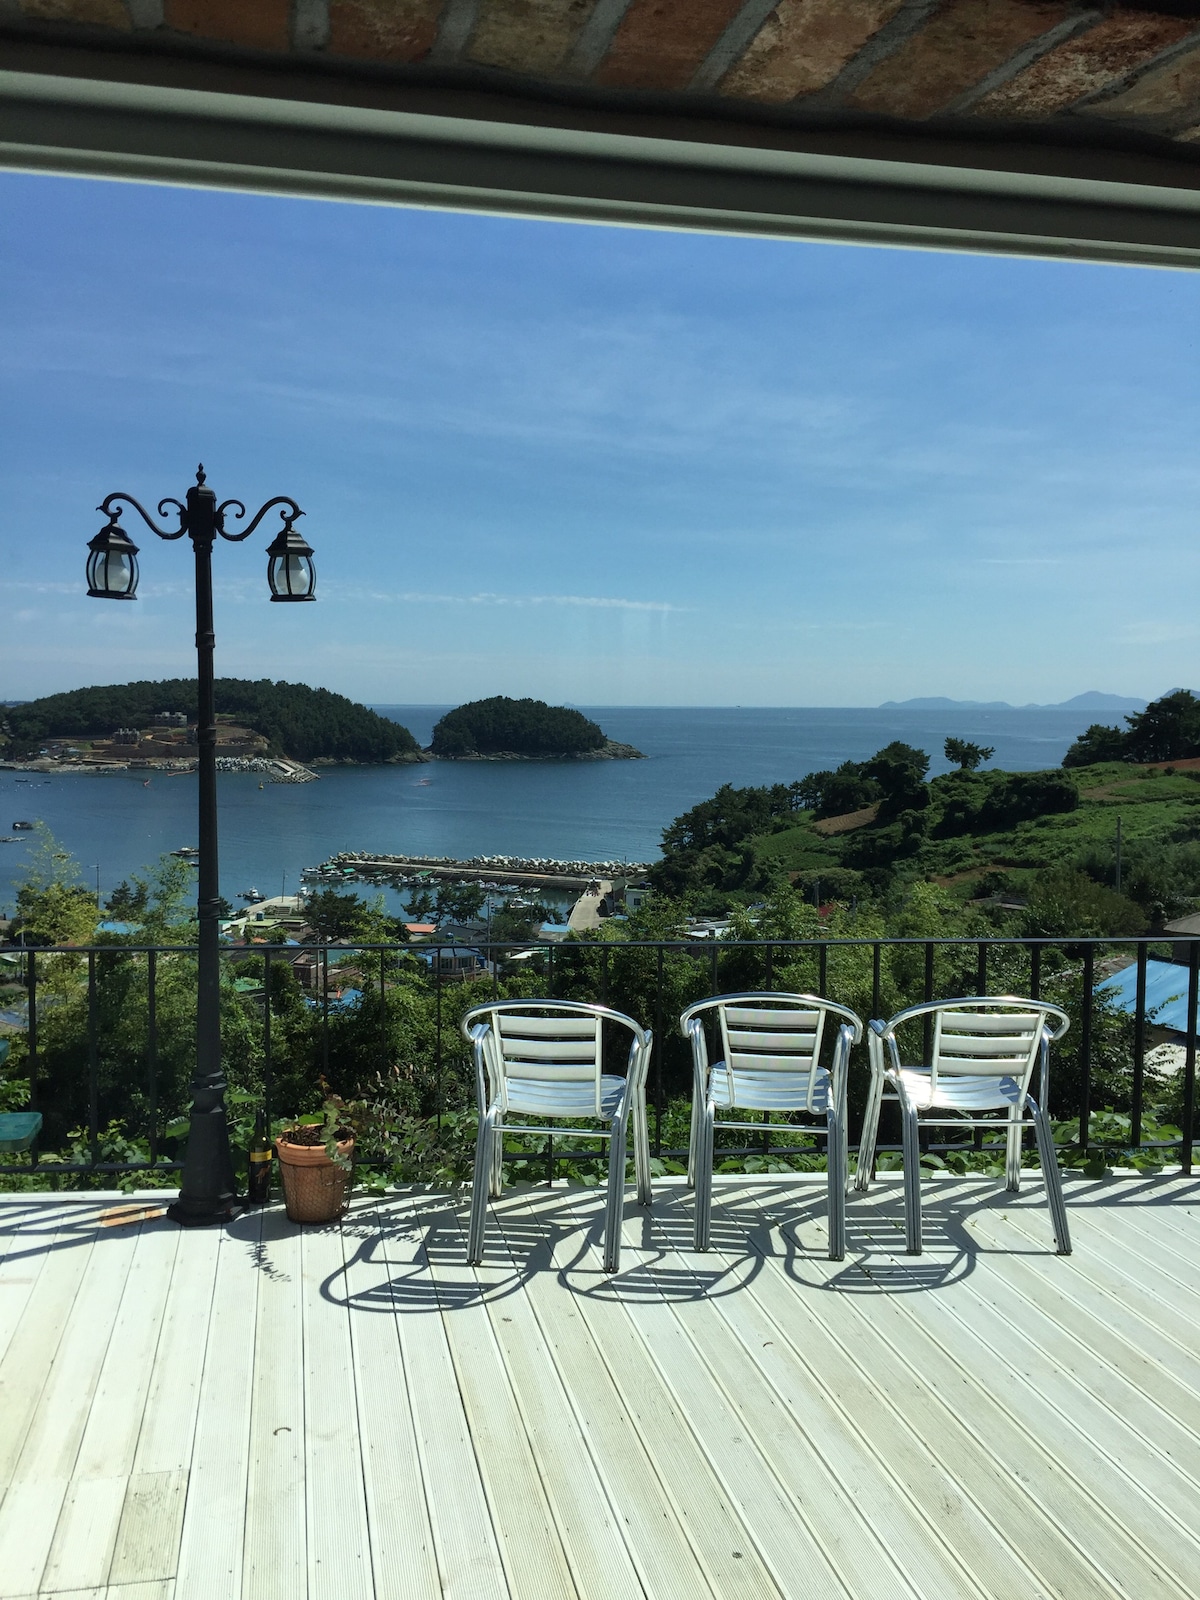 在这里，您可以像在自己花园一样欣赏南海（ Namhae Sea ）。 
岛上乡村别墅变成了我的别墅。